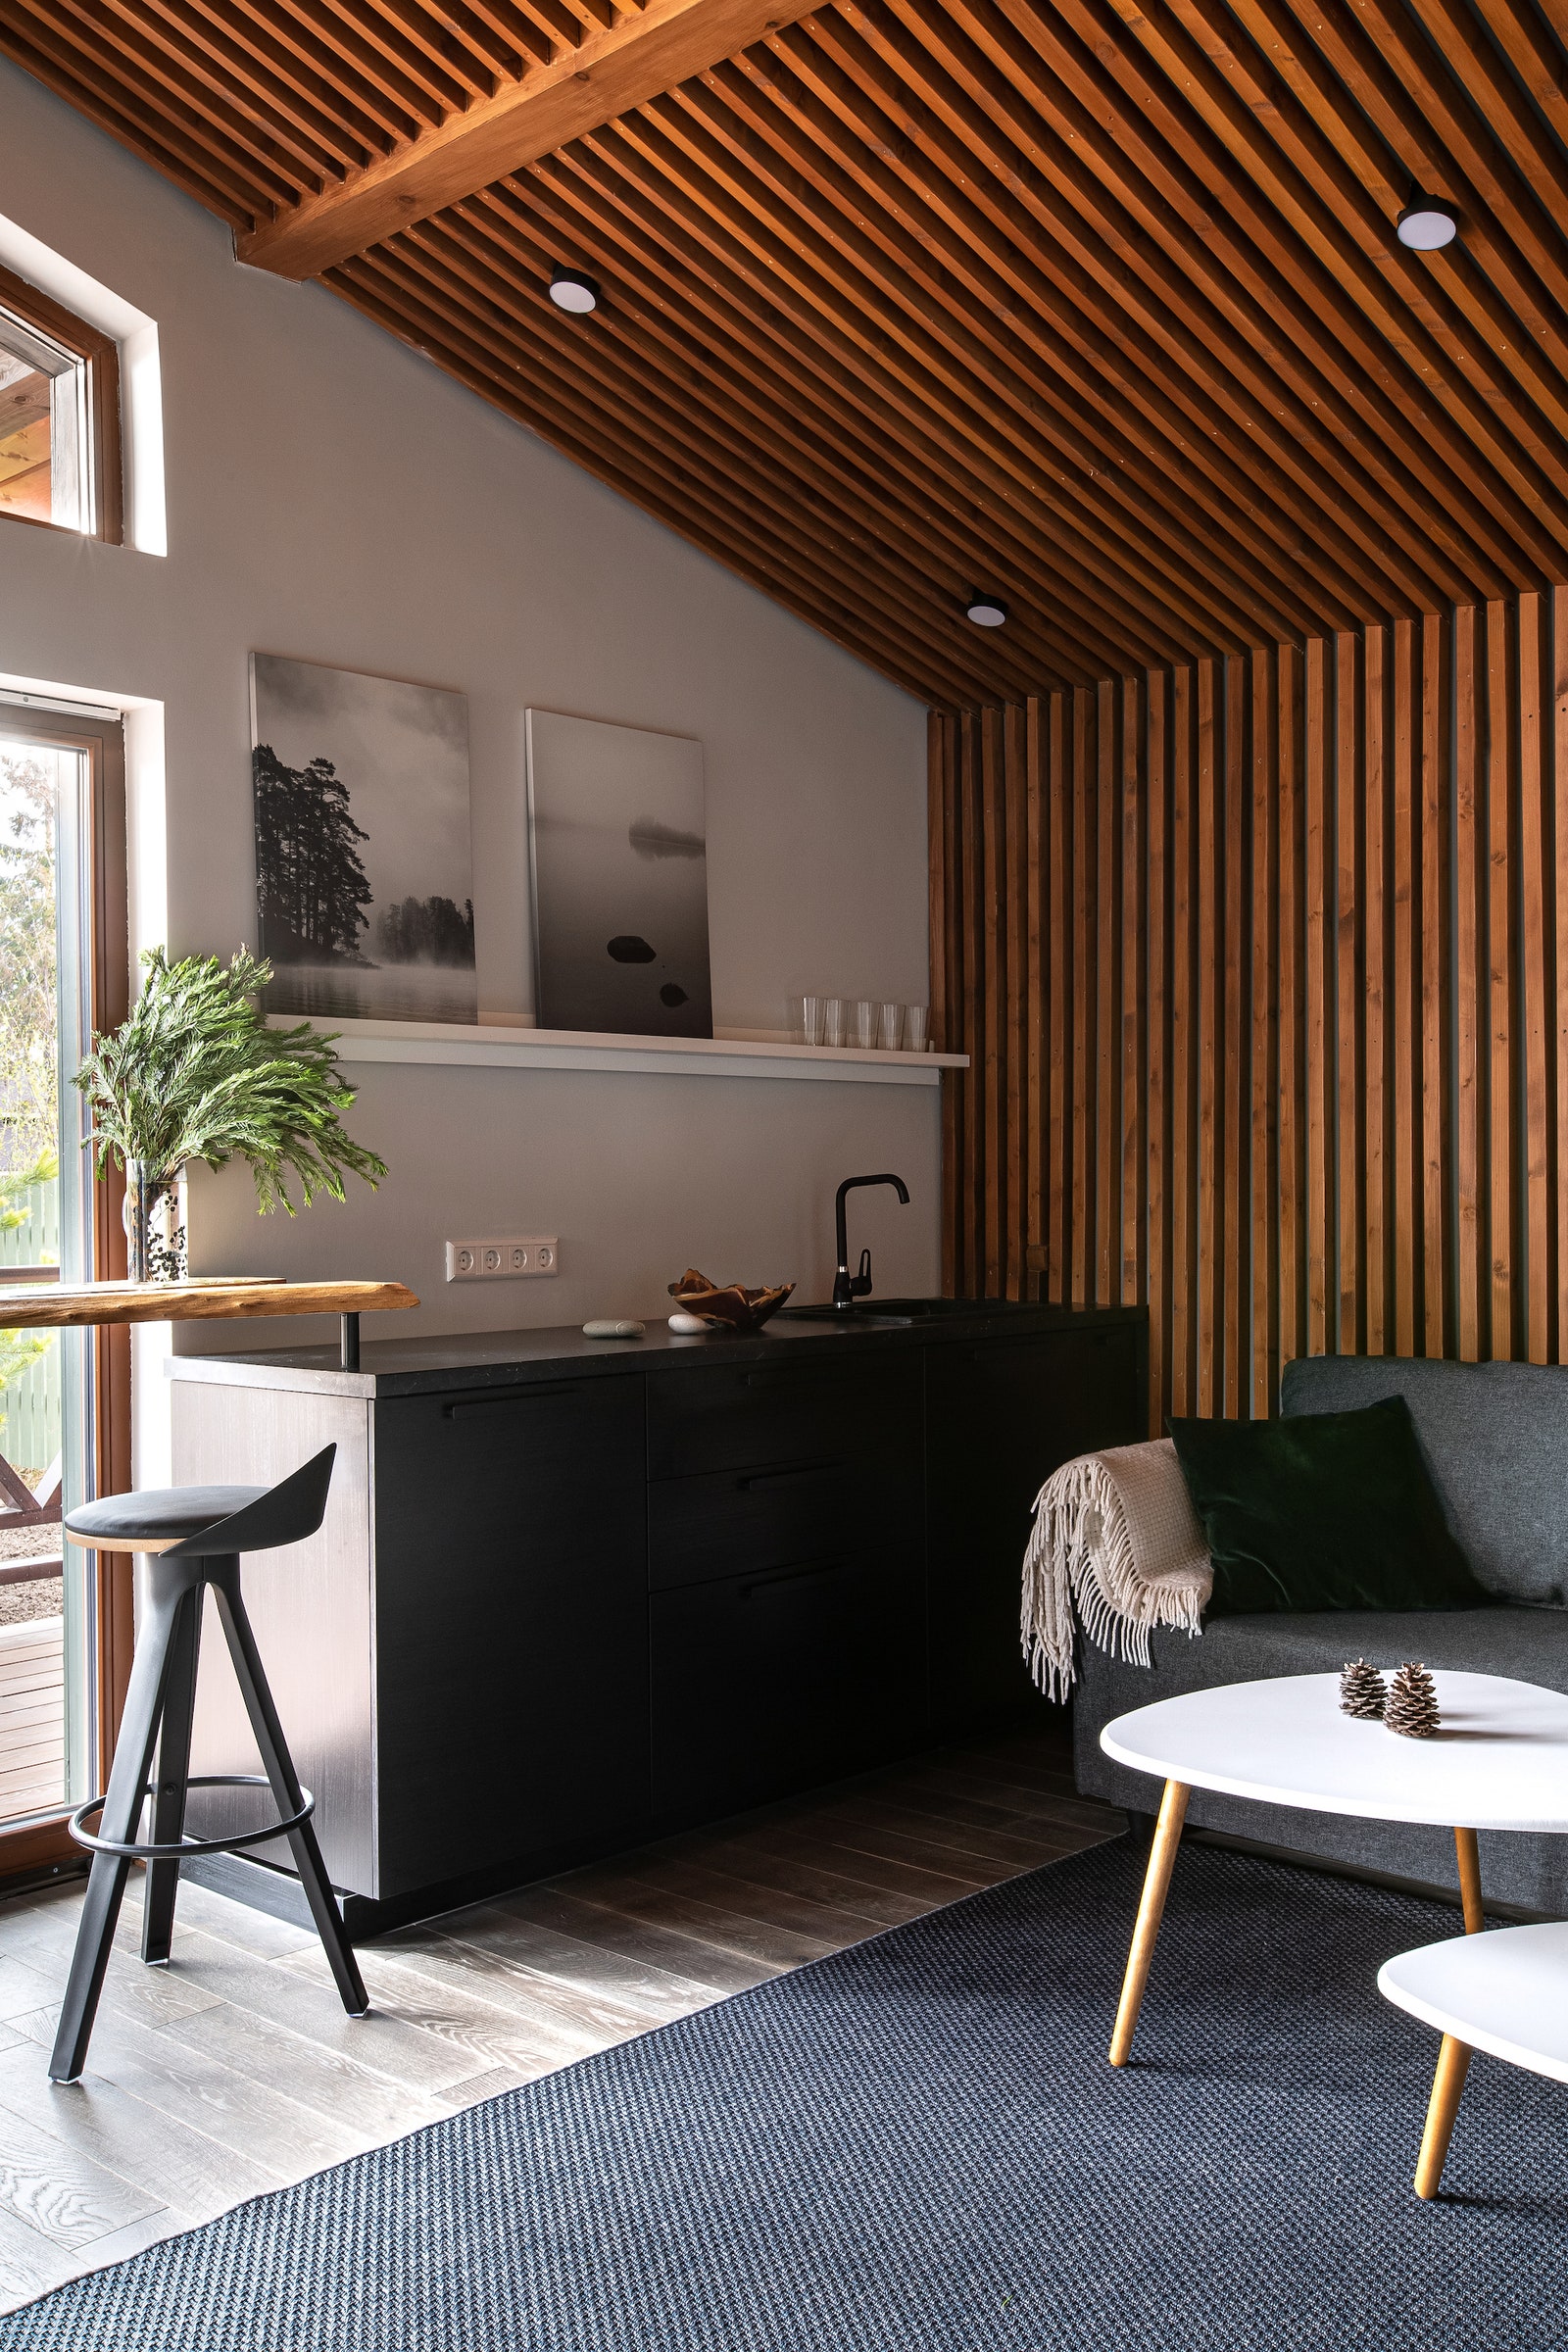 Комната отдыха. Журнальный столик “Стилгрей” “Калифорния мебель” кухня IKEA барный стул Libra Soft “Дизайн Cклад” барная...